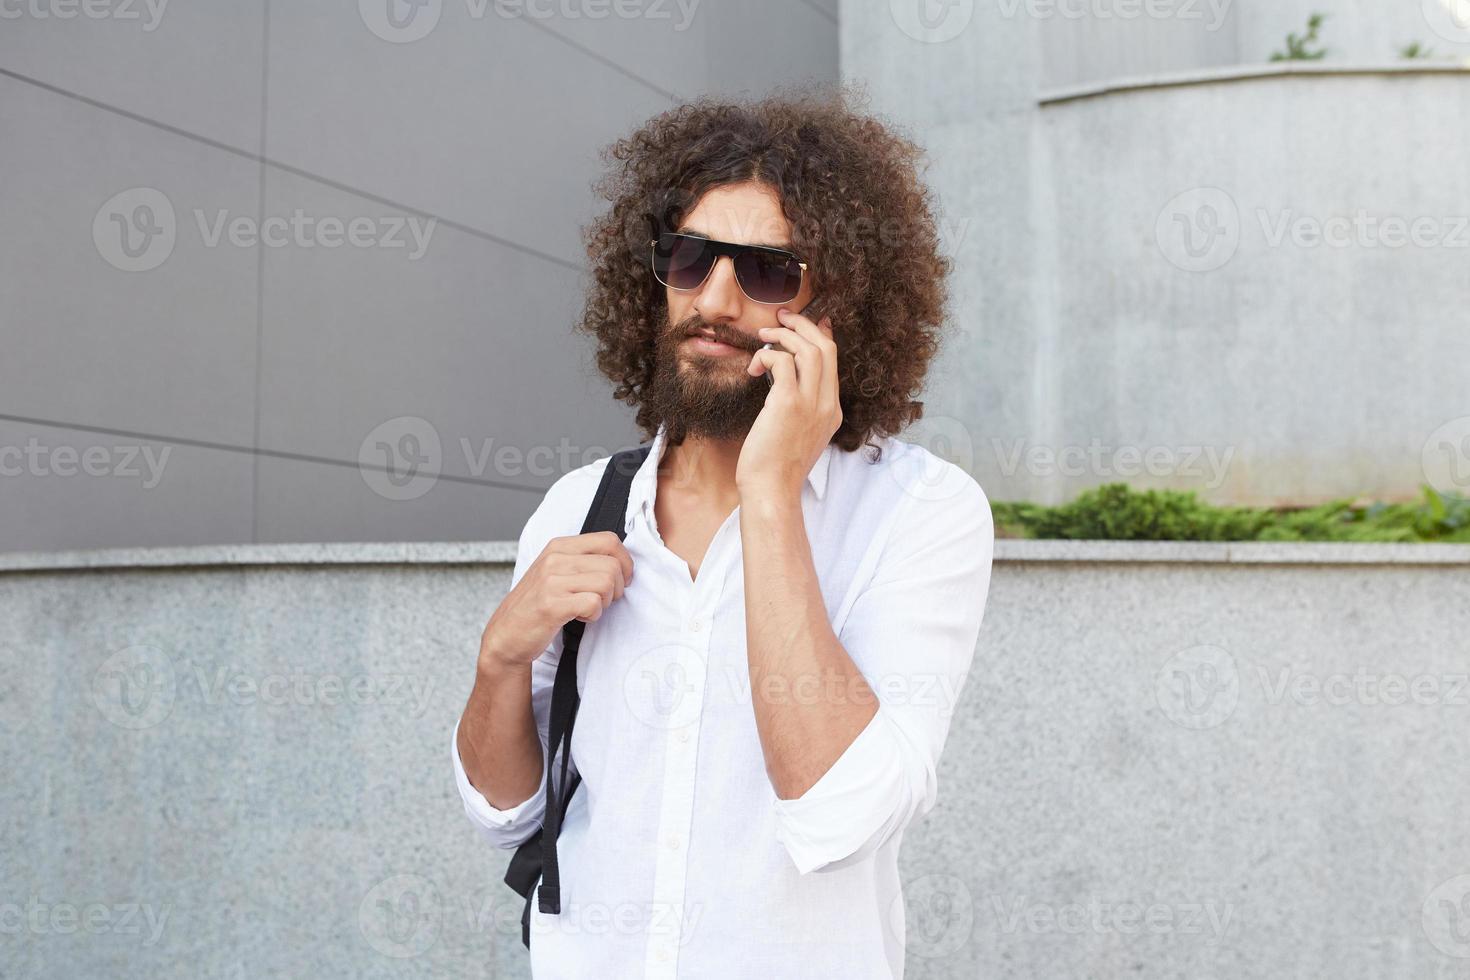 joli jeune homme bouclé avec barbe marchant dans la rue par une journée ensoleillée tout en parlant au téléphone, portant une chemise blanche et un sac à dos noir photo